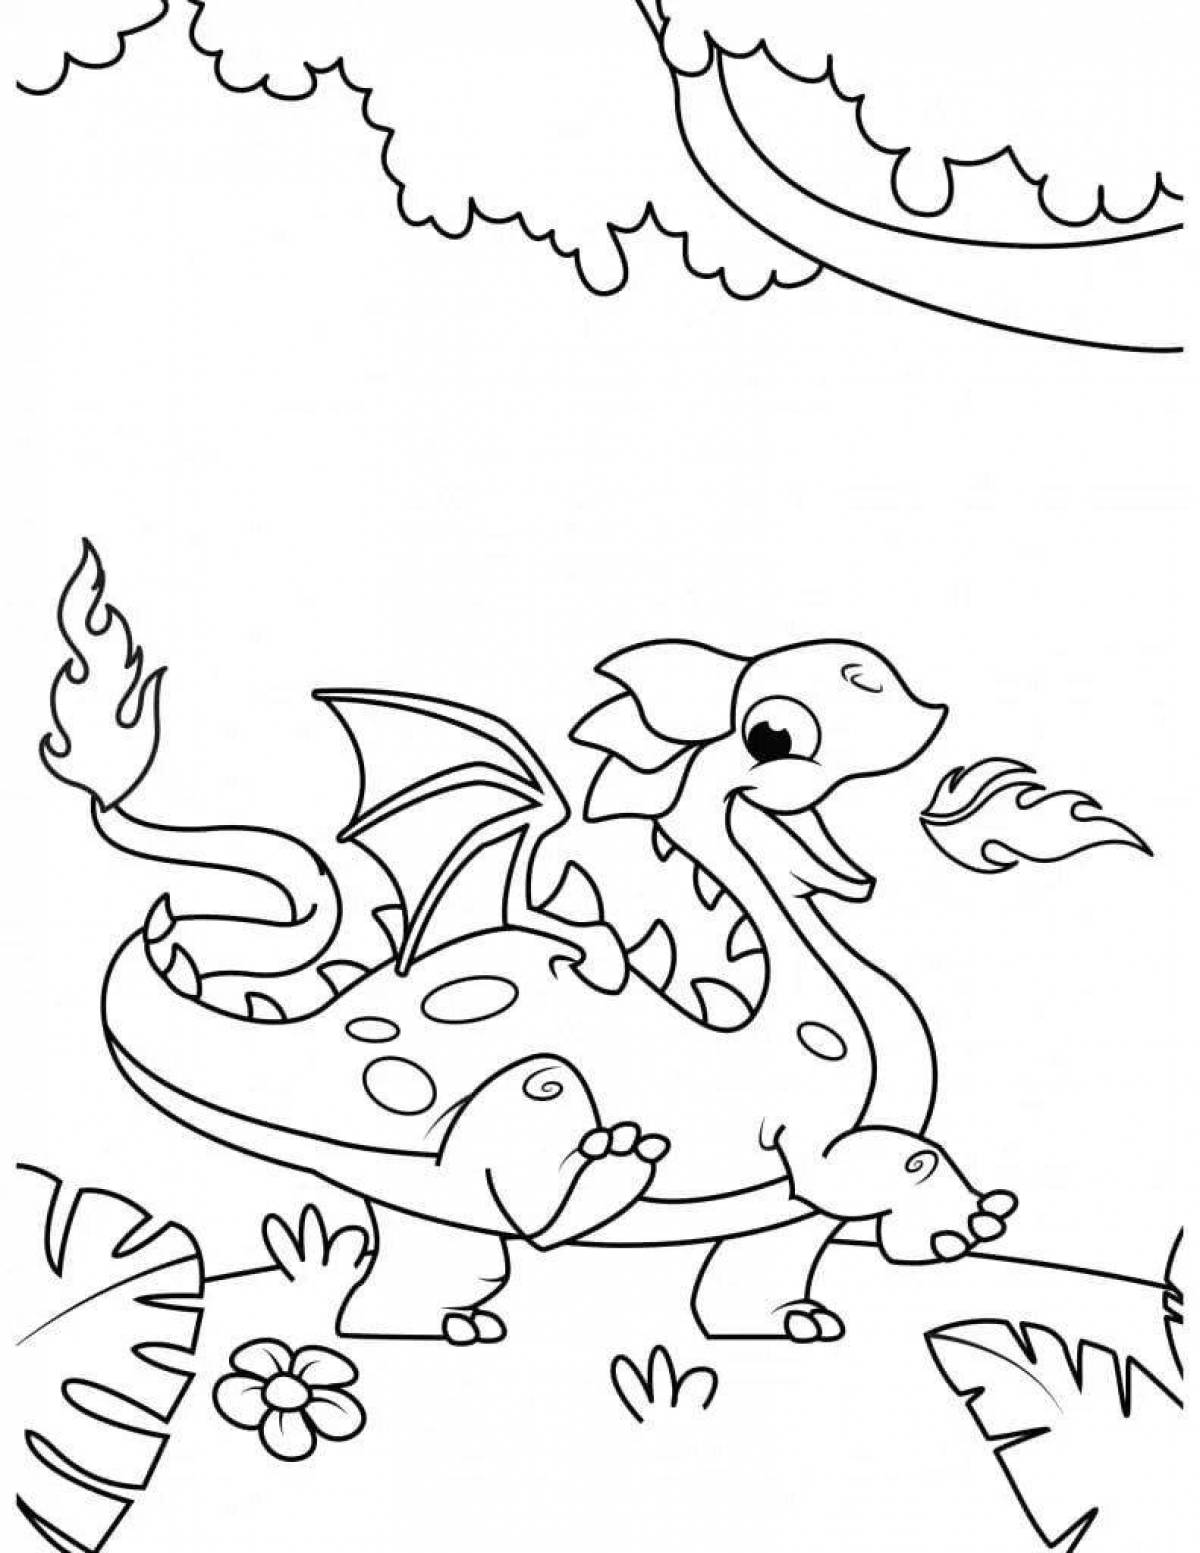 Dazzlingly cute dragon coloring book